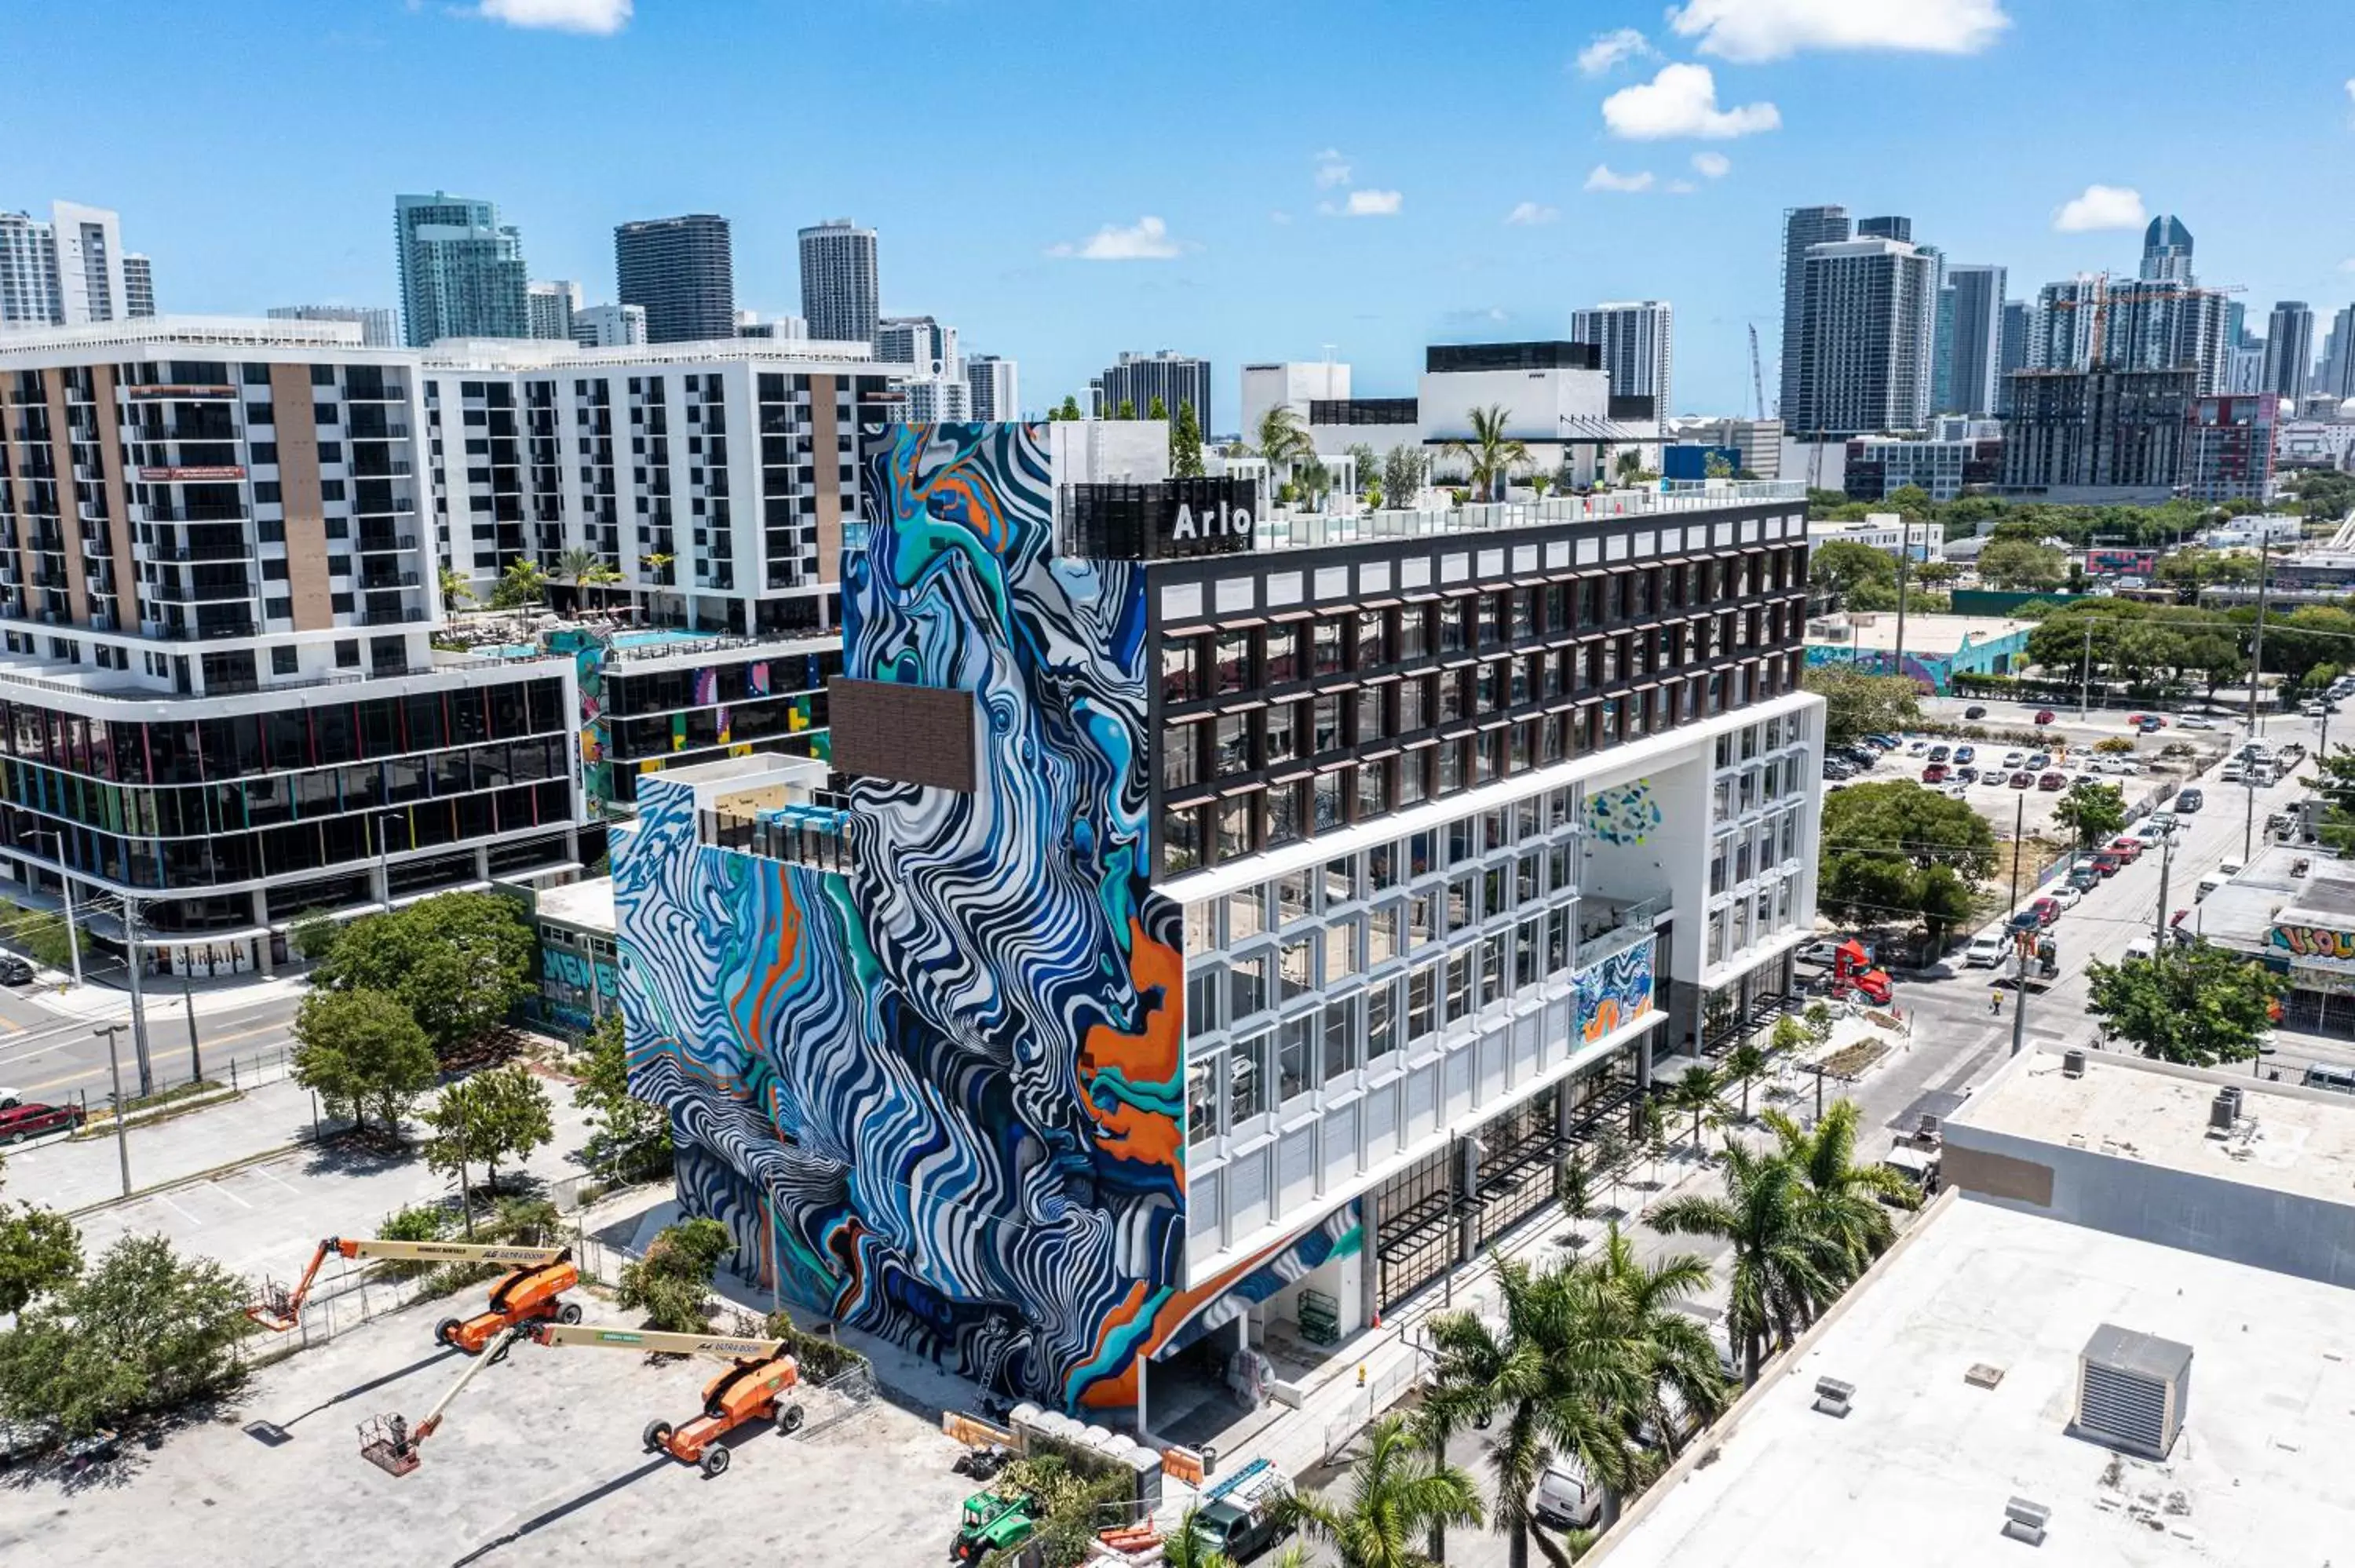 Property building, Bird's-eye View in Arlo Wynwood Miami